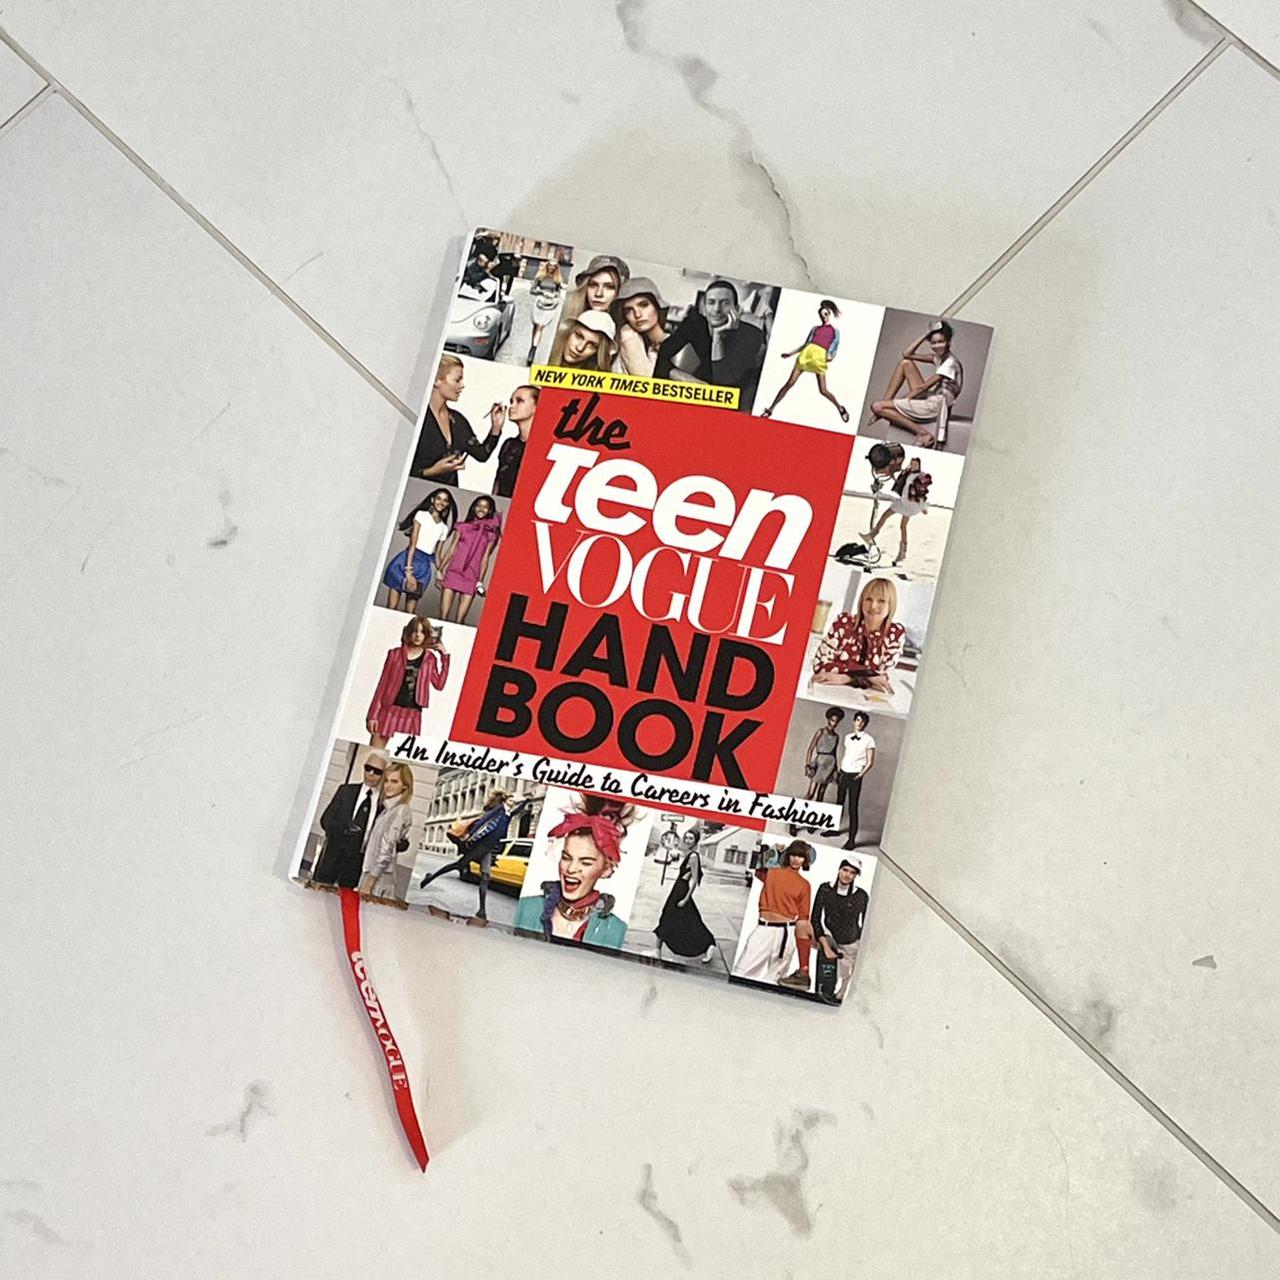 Vogue　The　Handbook　#book　Teen　#teenvogue　Depop